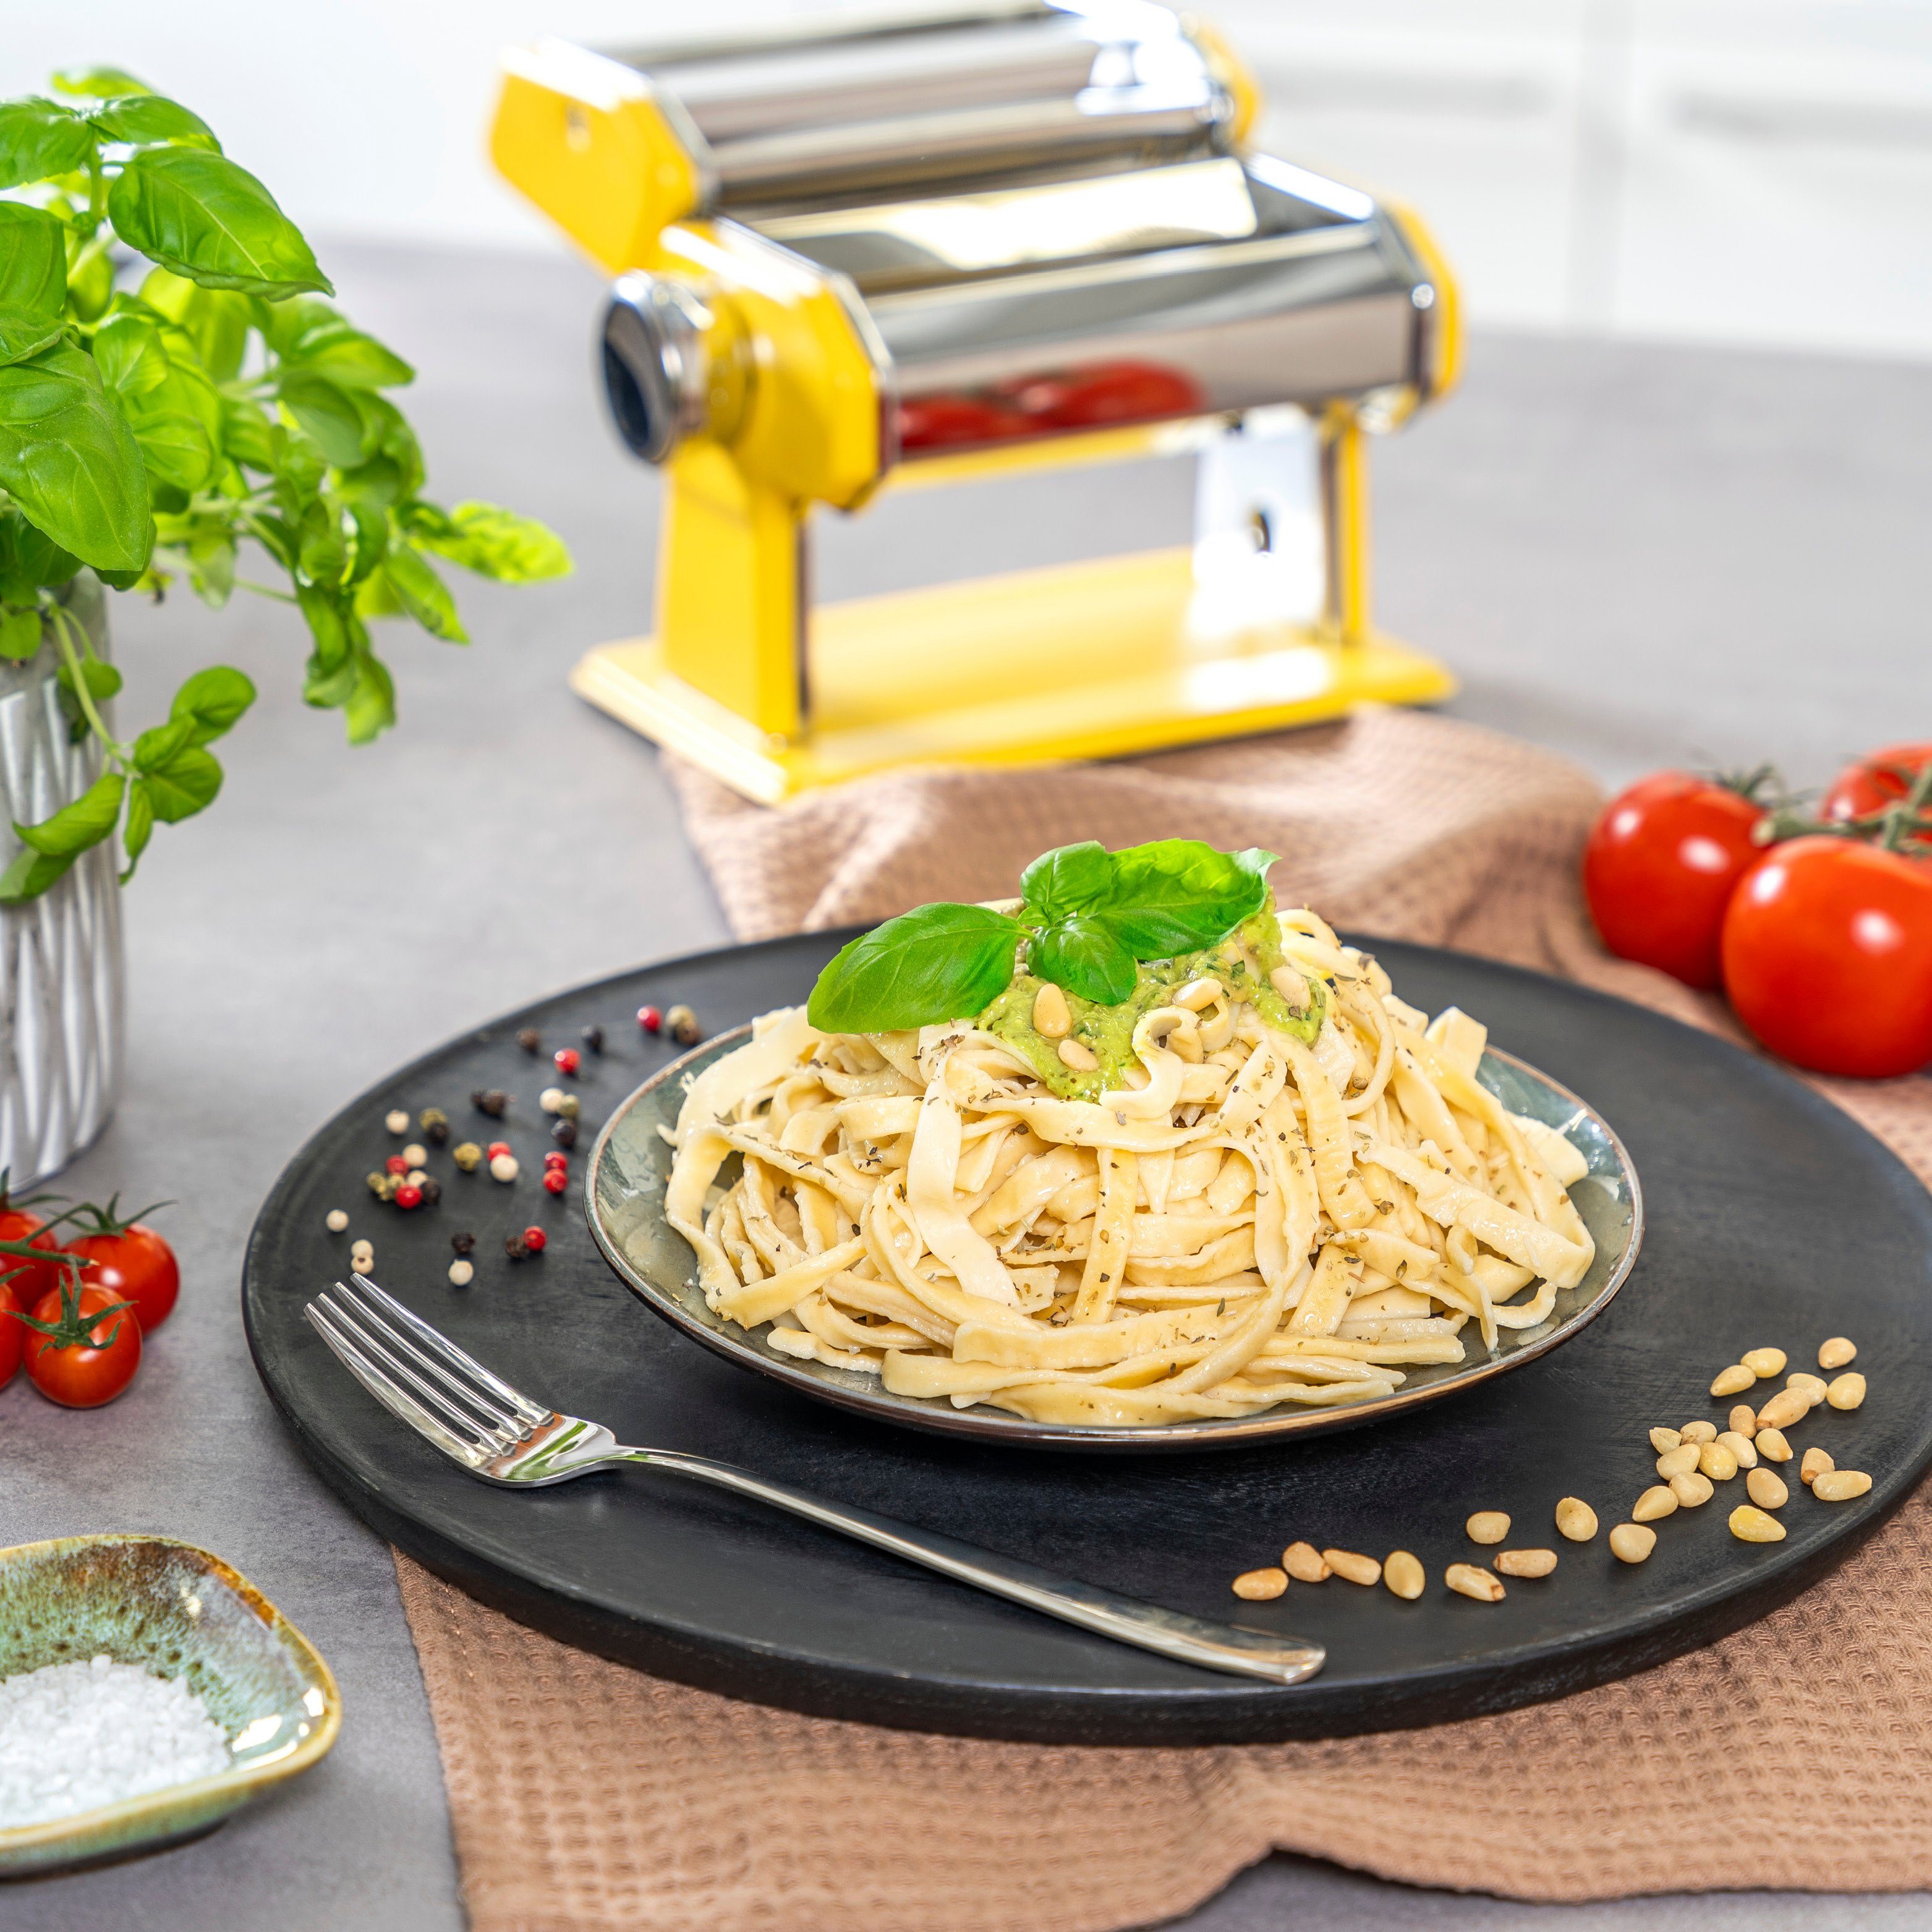 Nudelmaschine bremermann Nudelmaschine bremermann gelb für Edelstahl/Metall Spaghetti, Pasta -